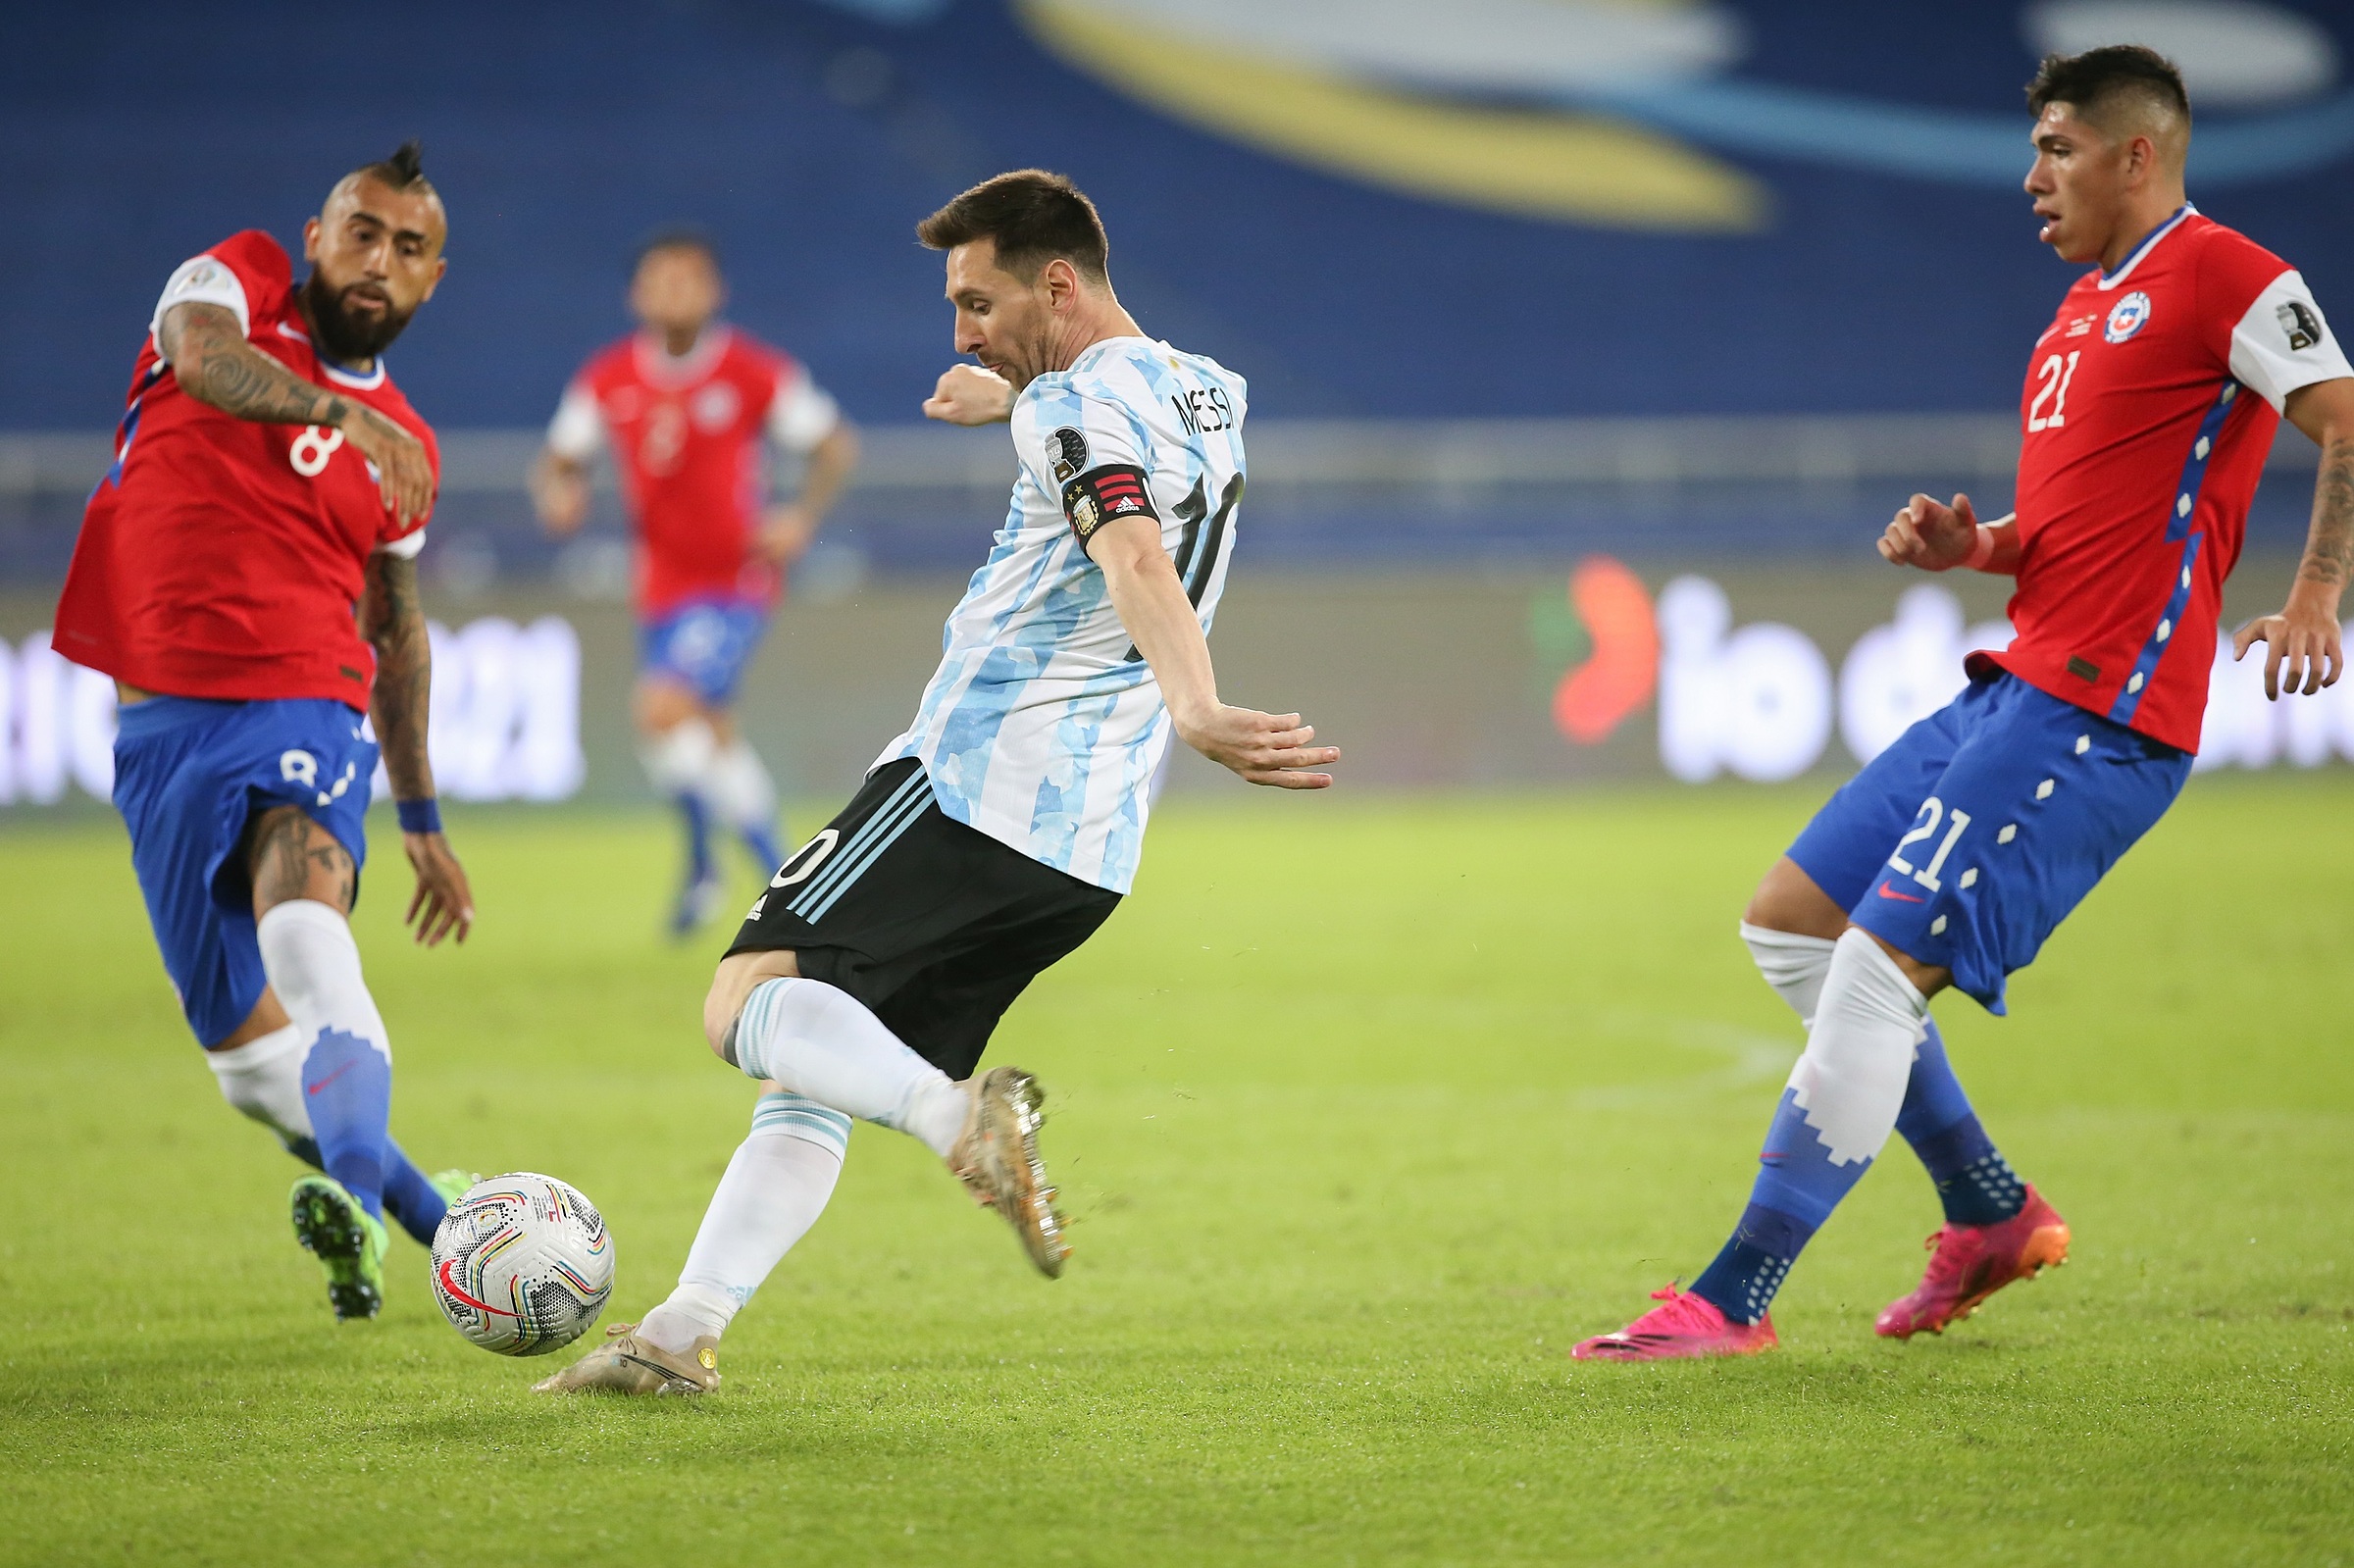 Đôi nét về Lionel Messi